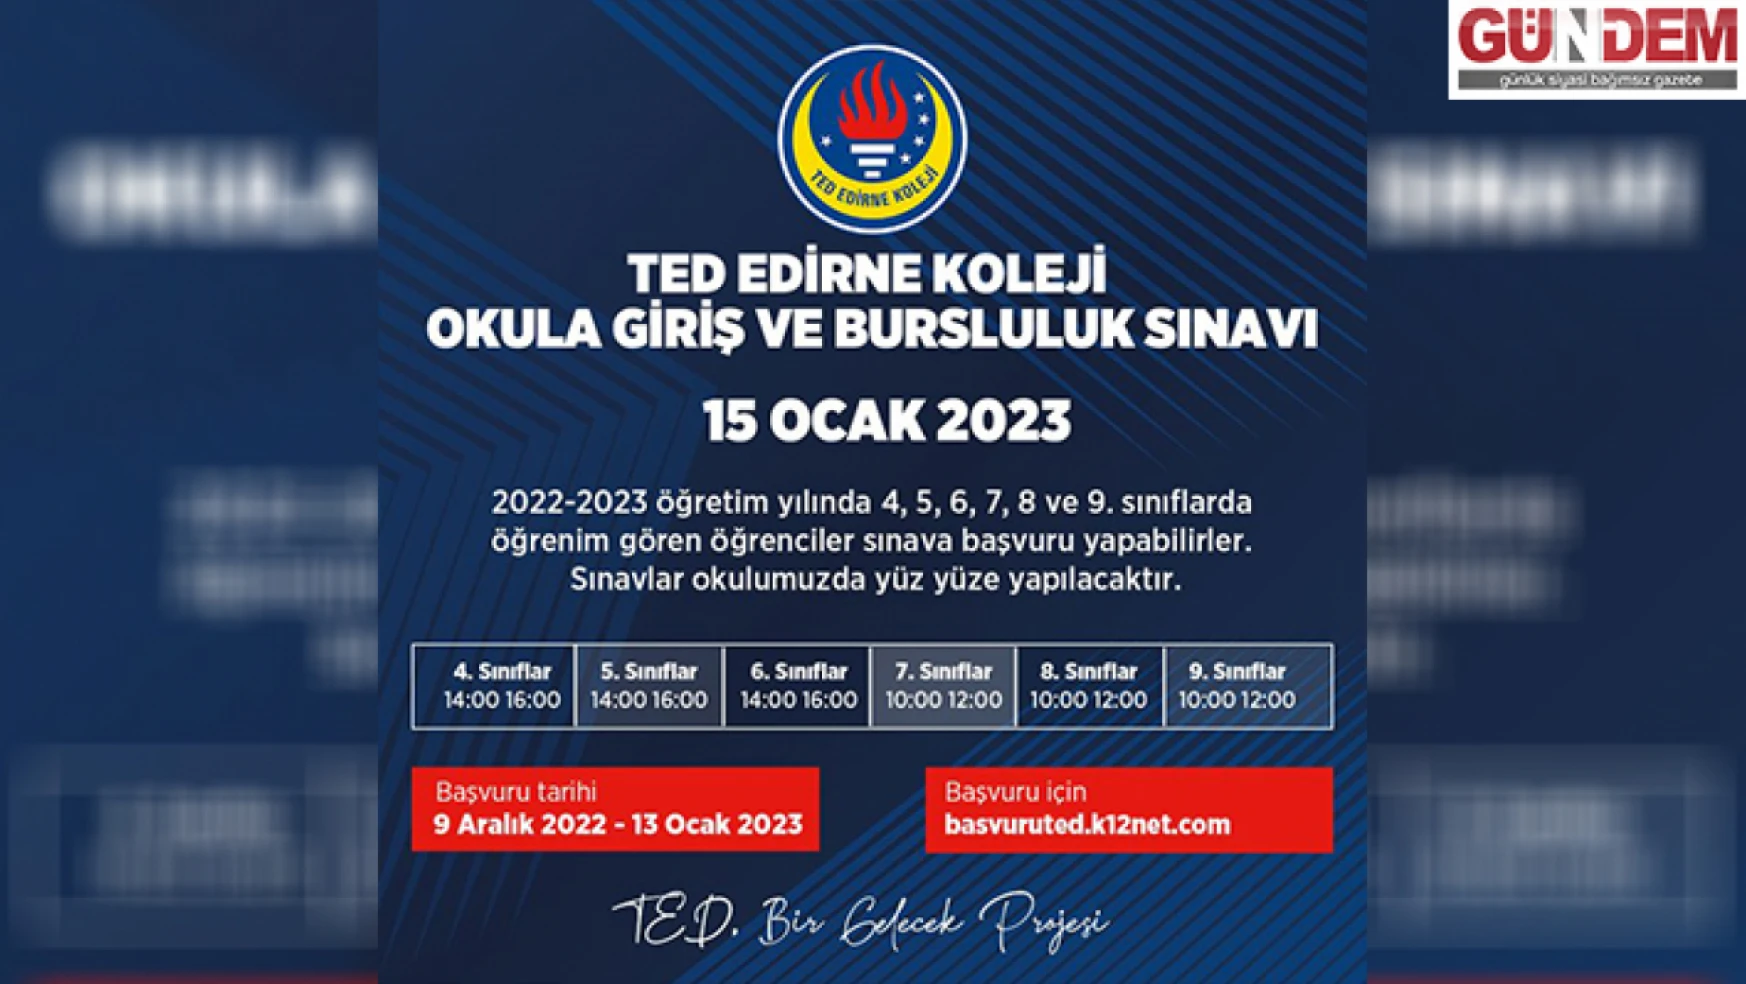 TED Edirne Koleji okula giriş ve bursluluk sınavı için başvuru tarihini açıkladı